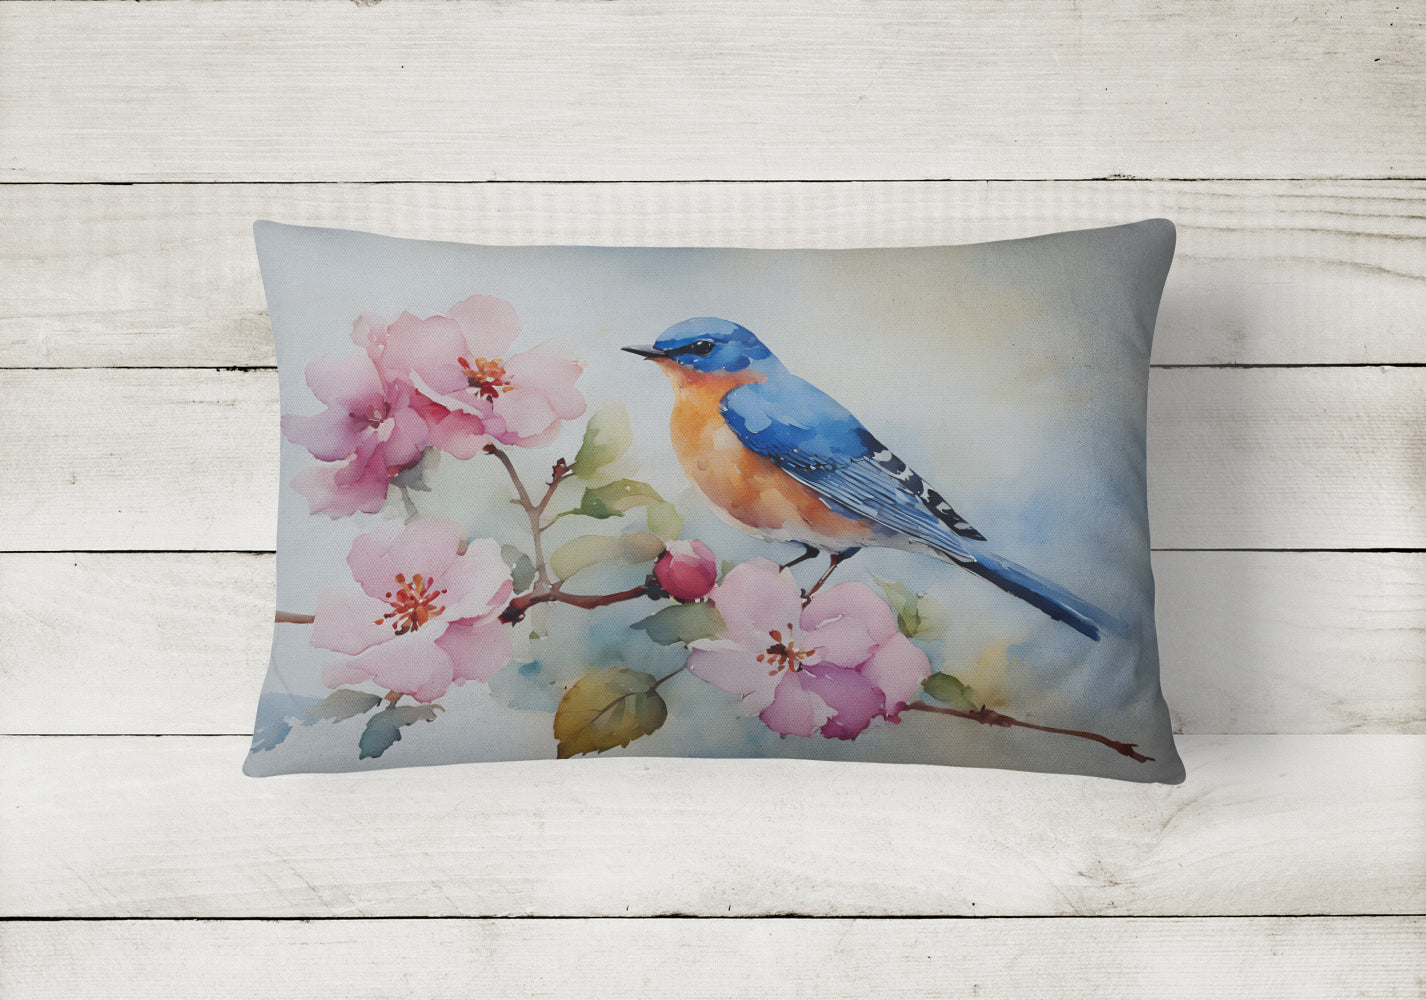 Bluebird Throw Pillow